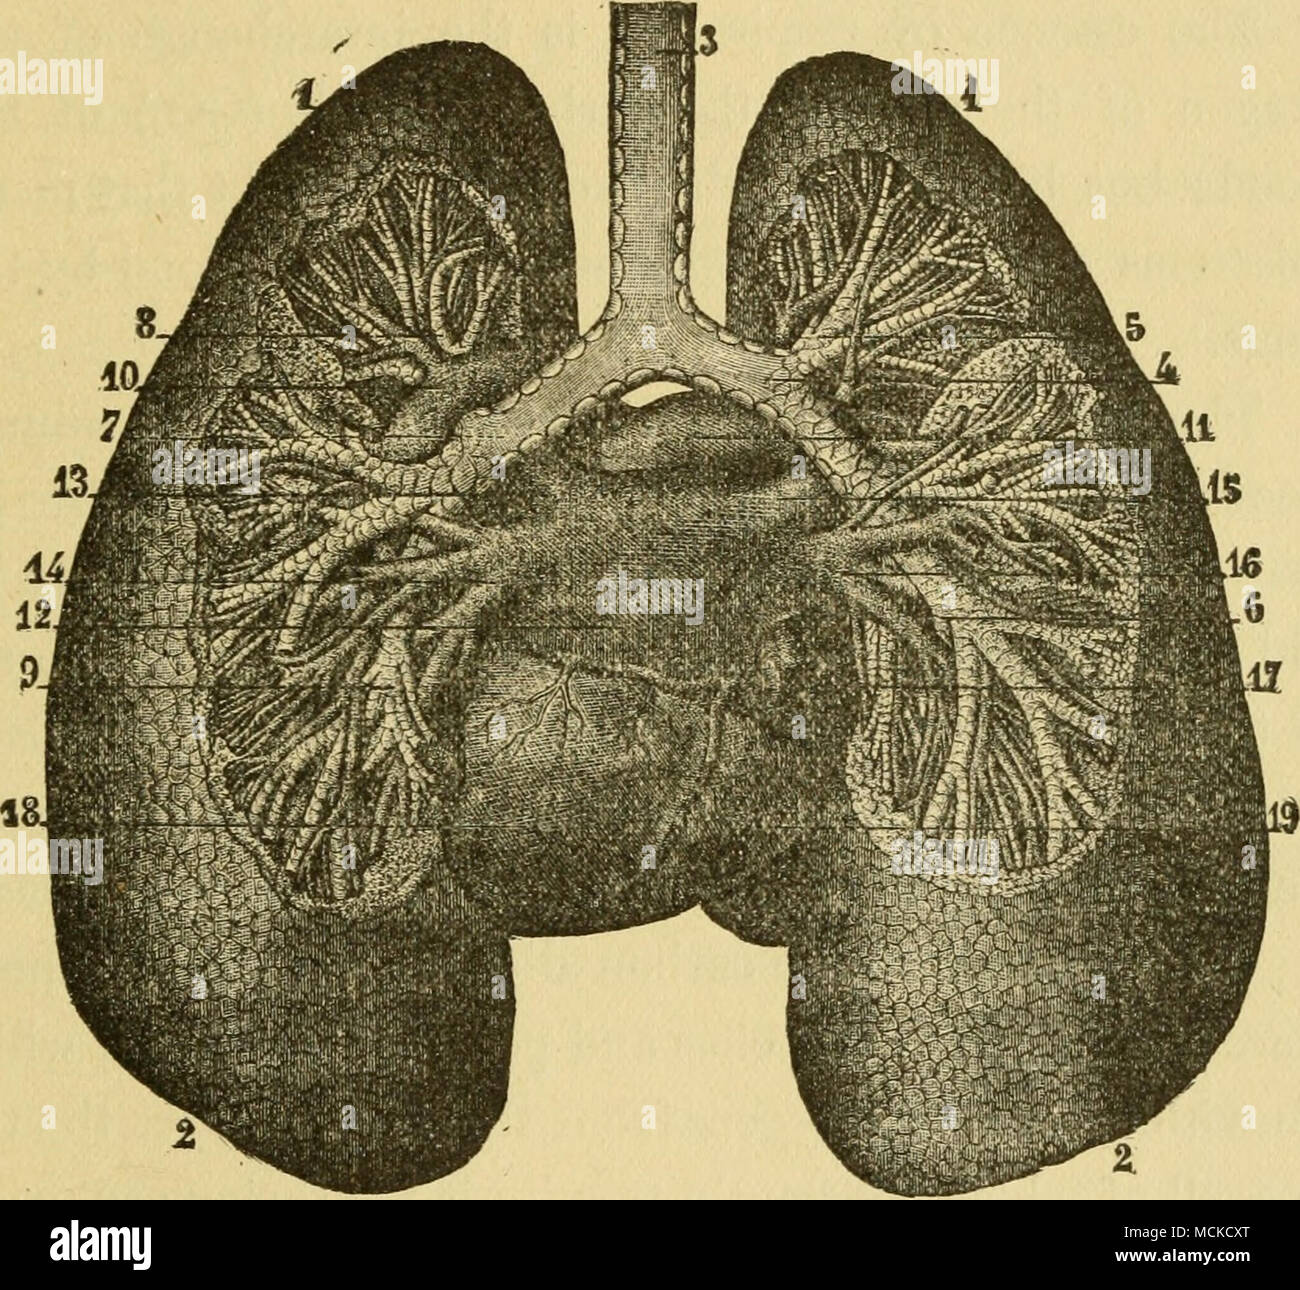 . Fig. 13.-bronchi e polmoni, vista posteriore (Sappey). 1,1, vertice di luugs ; 2, 2, la base dei polmoni ; 3, trachea ; 4, Bronco destro ; 5, divis- ione da lobo superiore di limg ; 6, divisione al lobo inferiore ; 7, Bronco sinistro ; 8, divis- ione da lobo superiore ; 9, divisione al lobo inferiore ; 10, il ramo di sinistra della arteria polmonare : 11, il ramo di destra ; 12, padiglione auricolare sinistro del cuore; 13, sinistra vena polmonare superiore ; 14, sinistro inferiore della vena polmonare ; 15, destra vena polmonare superiore ; 16^ destra inferiore della vena polmonare ; 17, vena cava inferiore; 18, il ventricolo sinistro del cuore; 19, il ventricolo destro. perché la Foto Stock